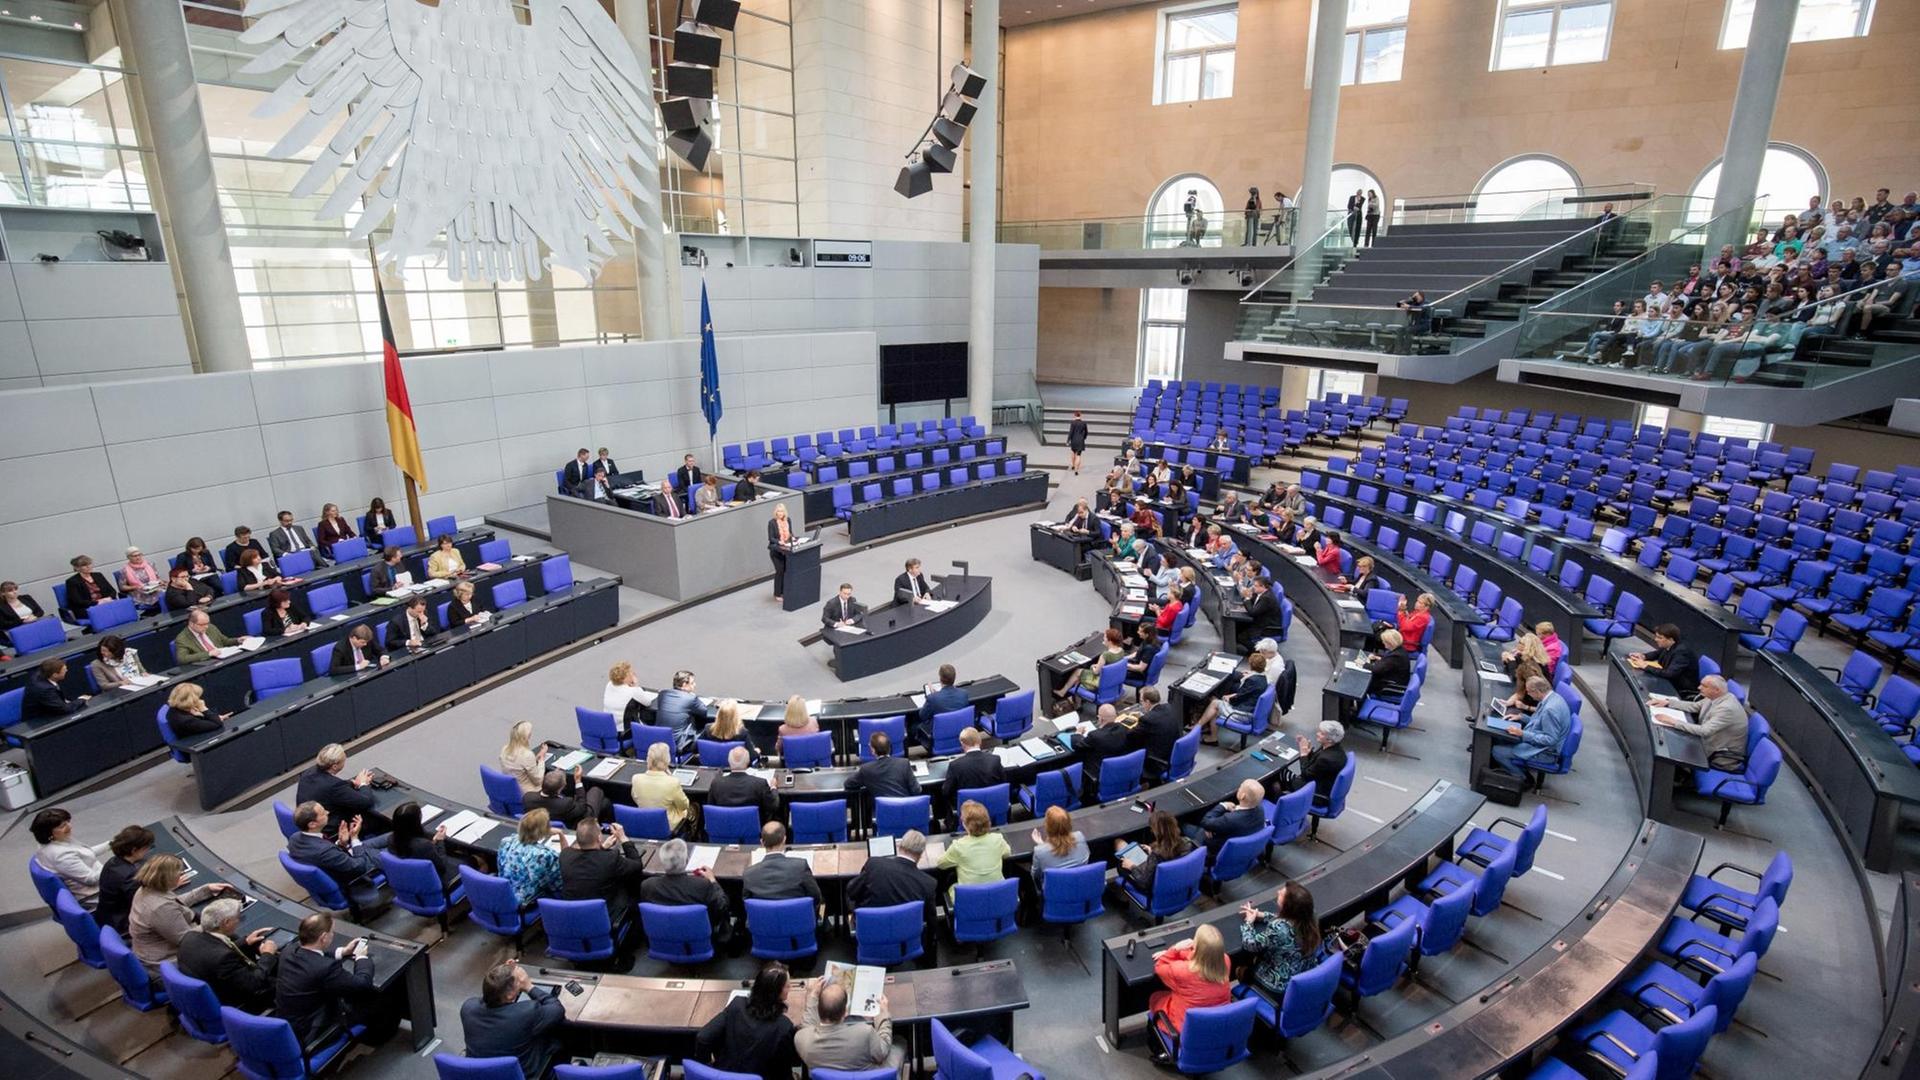 Zu sehen ist das Plenum des Deutschen Bundestages von oben